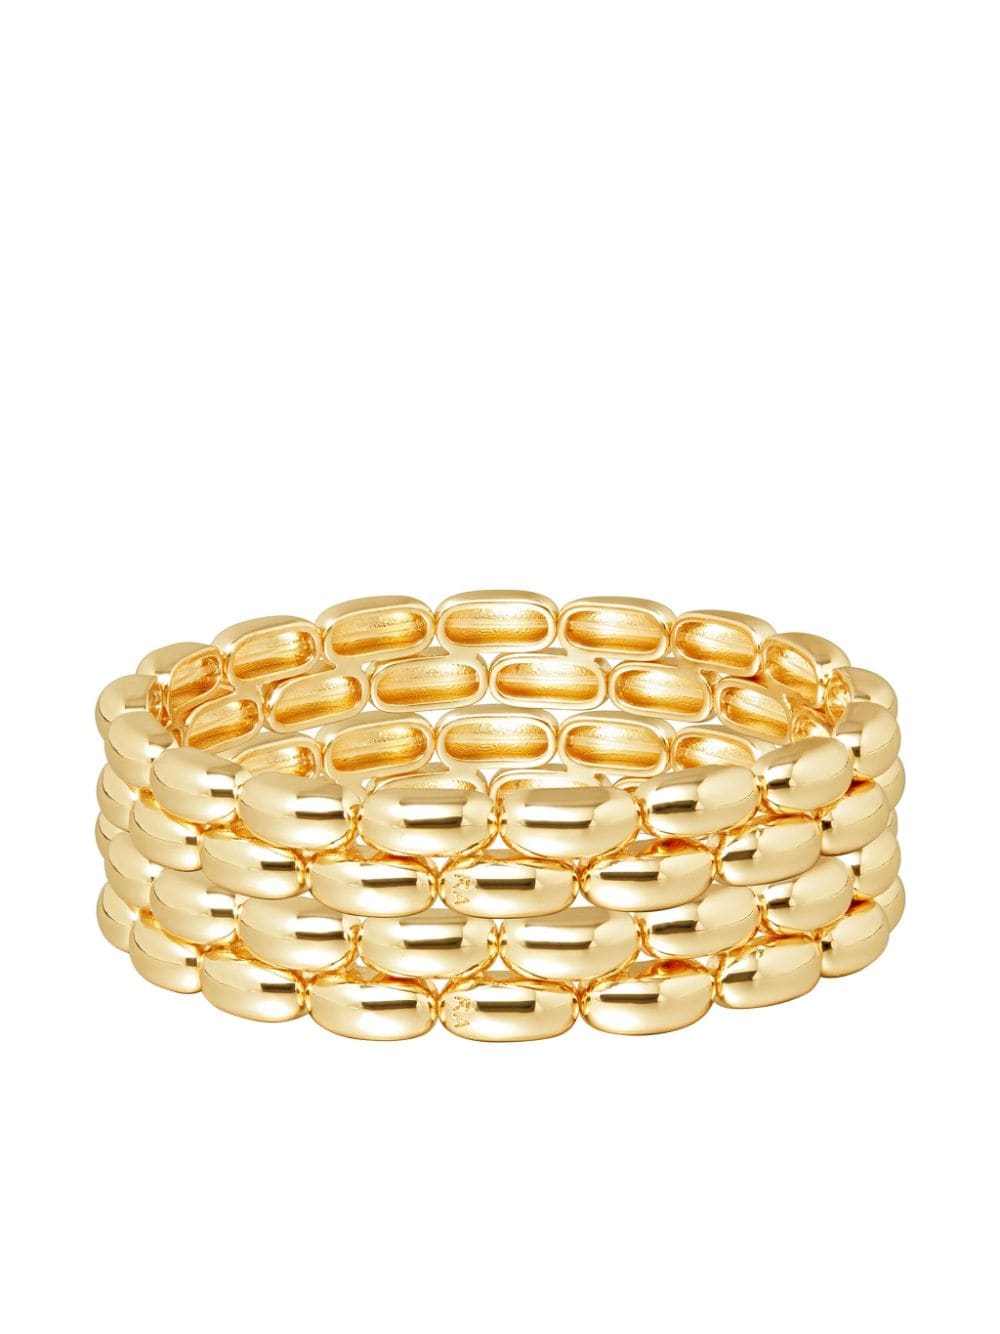 Roxanne Assoulin The Pillow bracelet bunch - Gold von Roxanne Assoulin